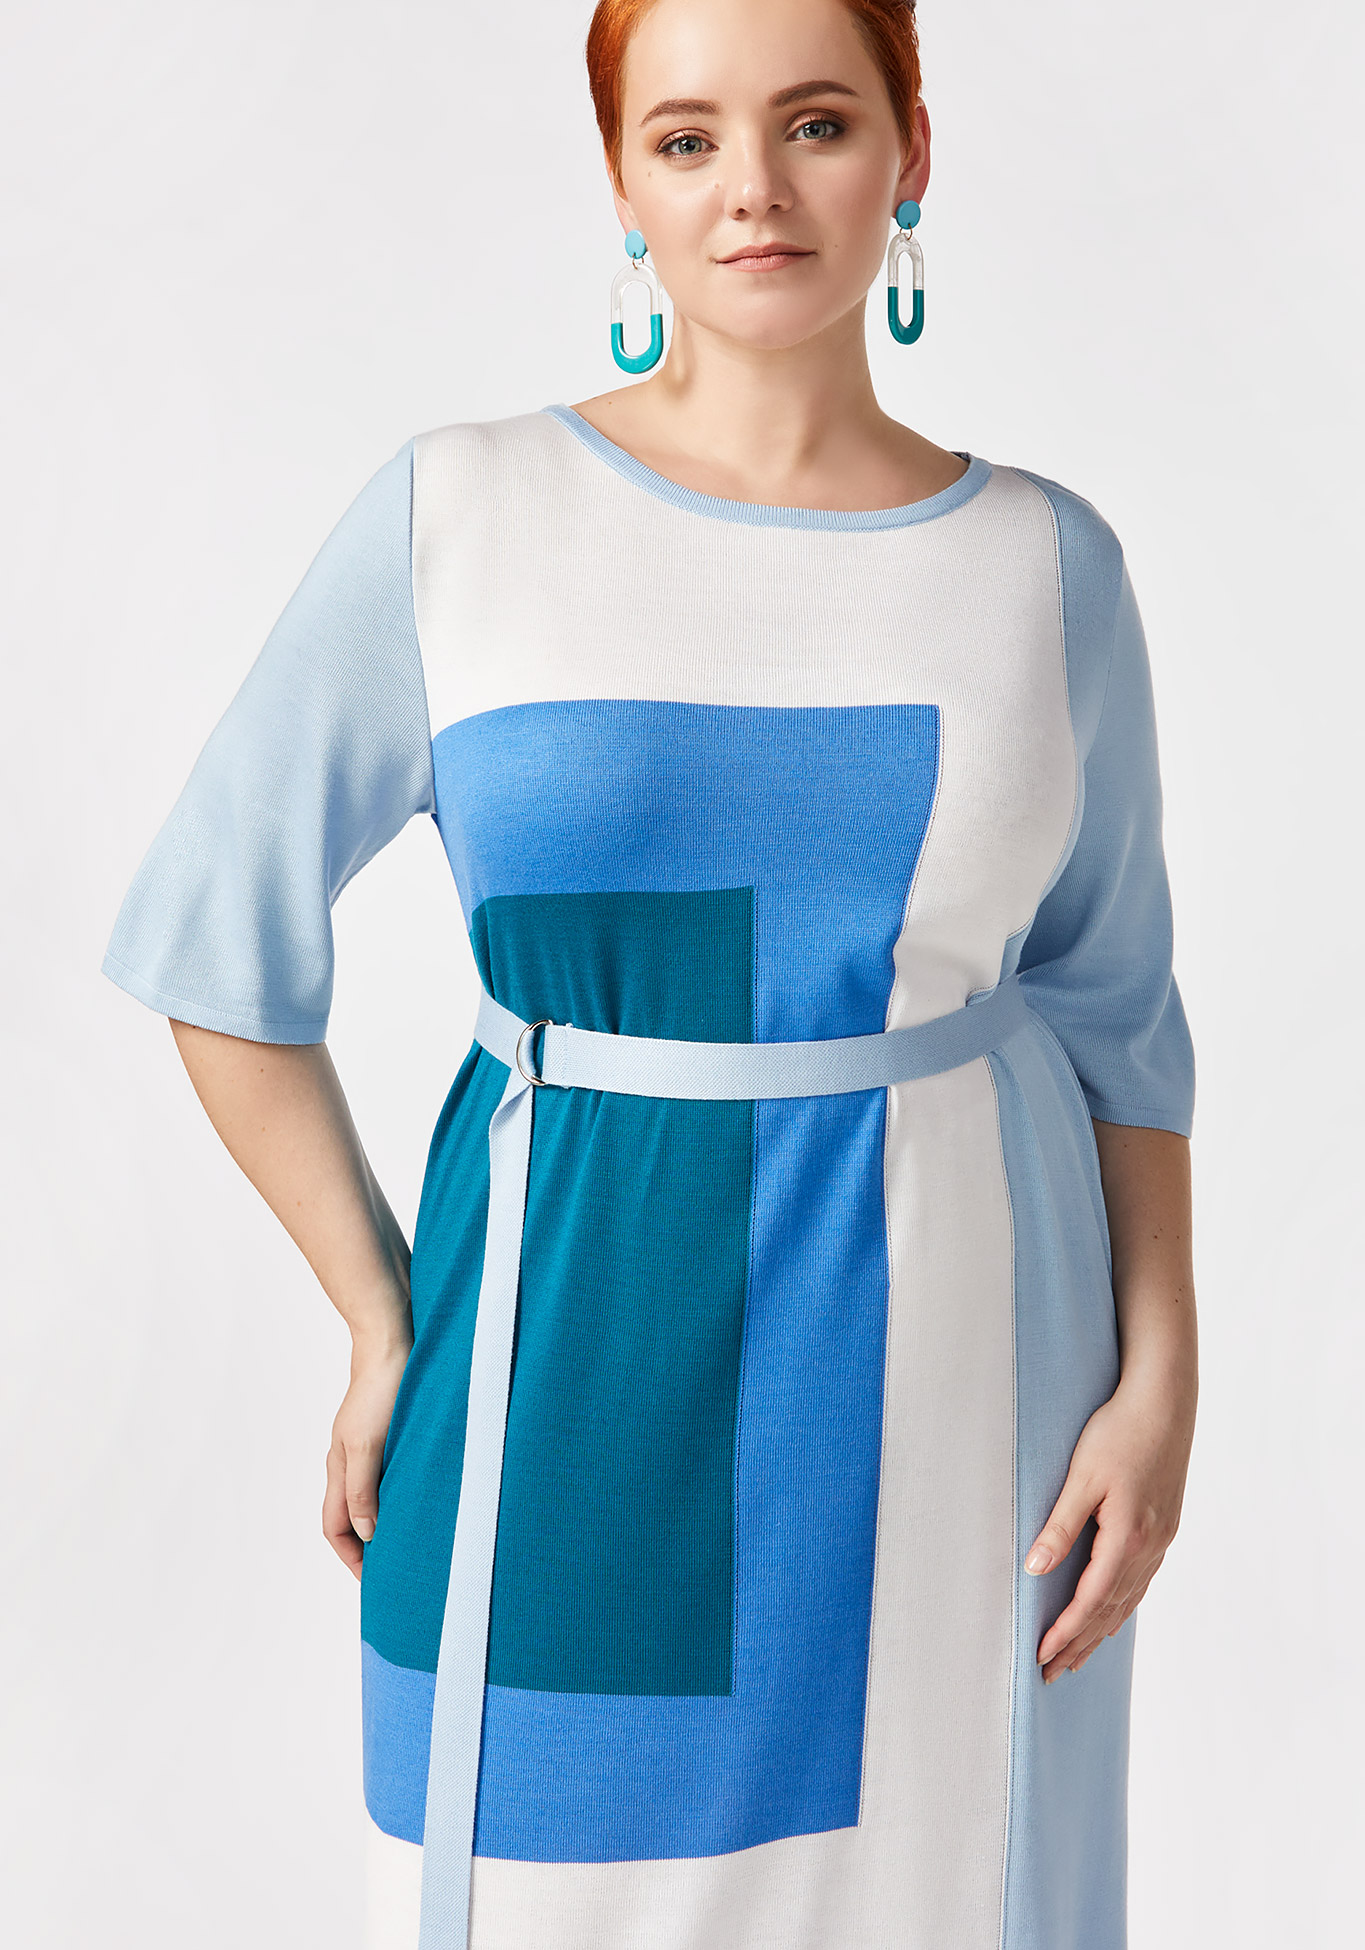 Платье с принтом "коллор блок" Vivawool, размер 42, цвет голубой - фото 4